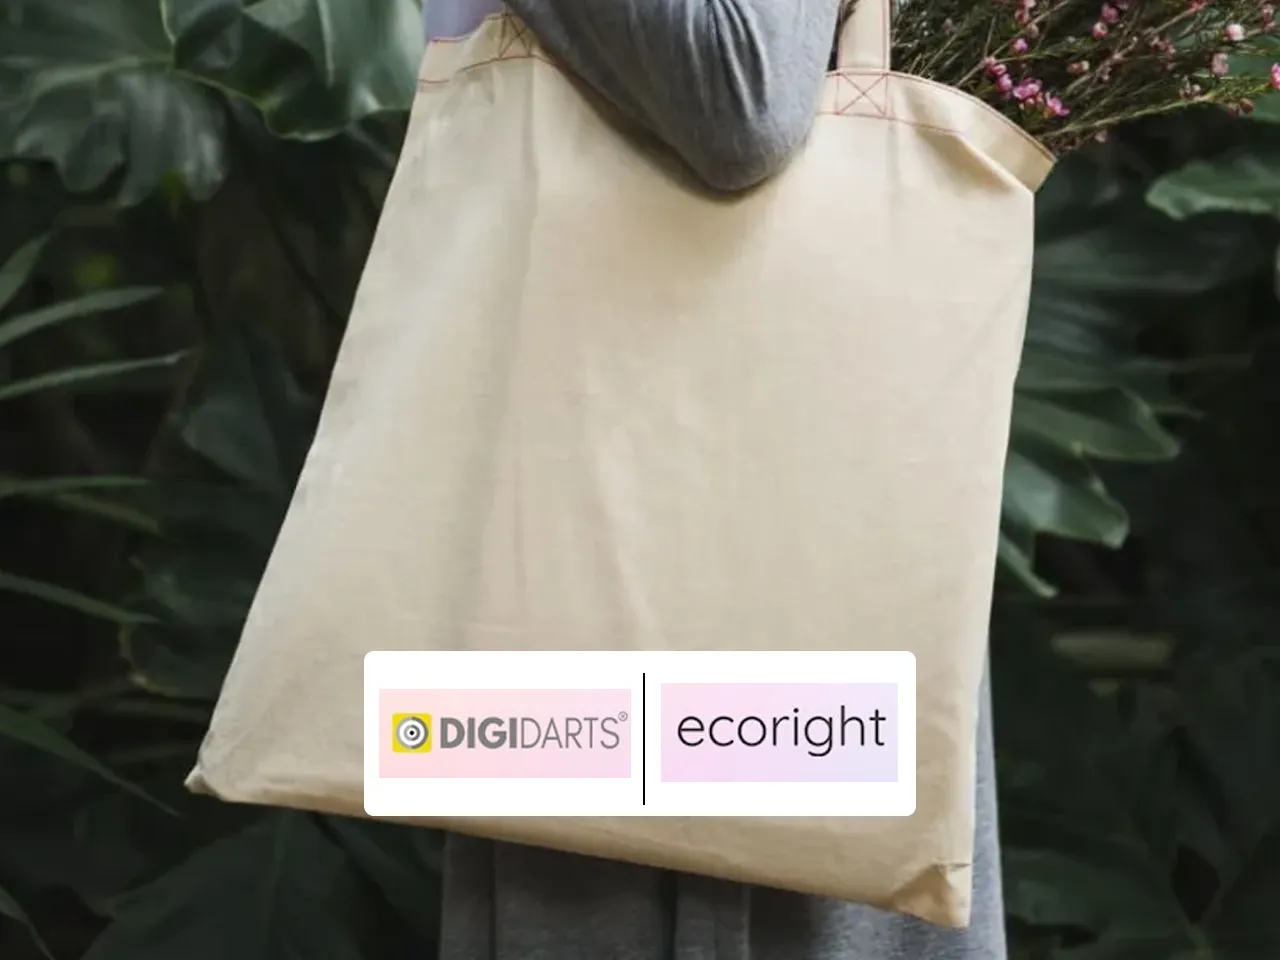 Digidarts bags the digital mandate for Ecoright